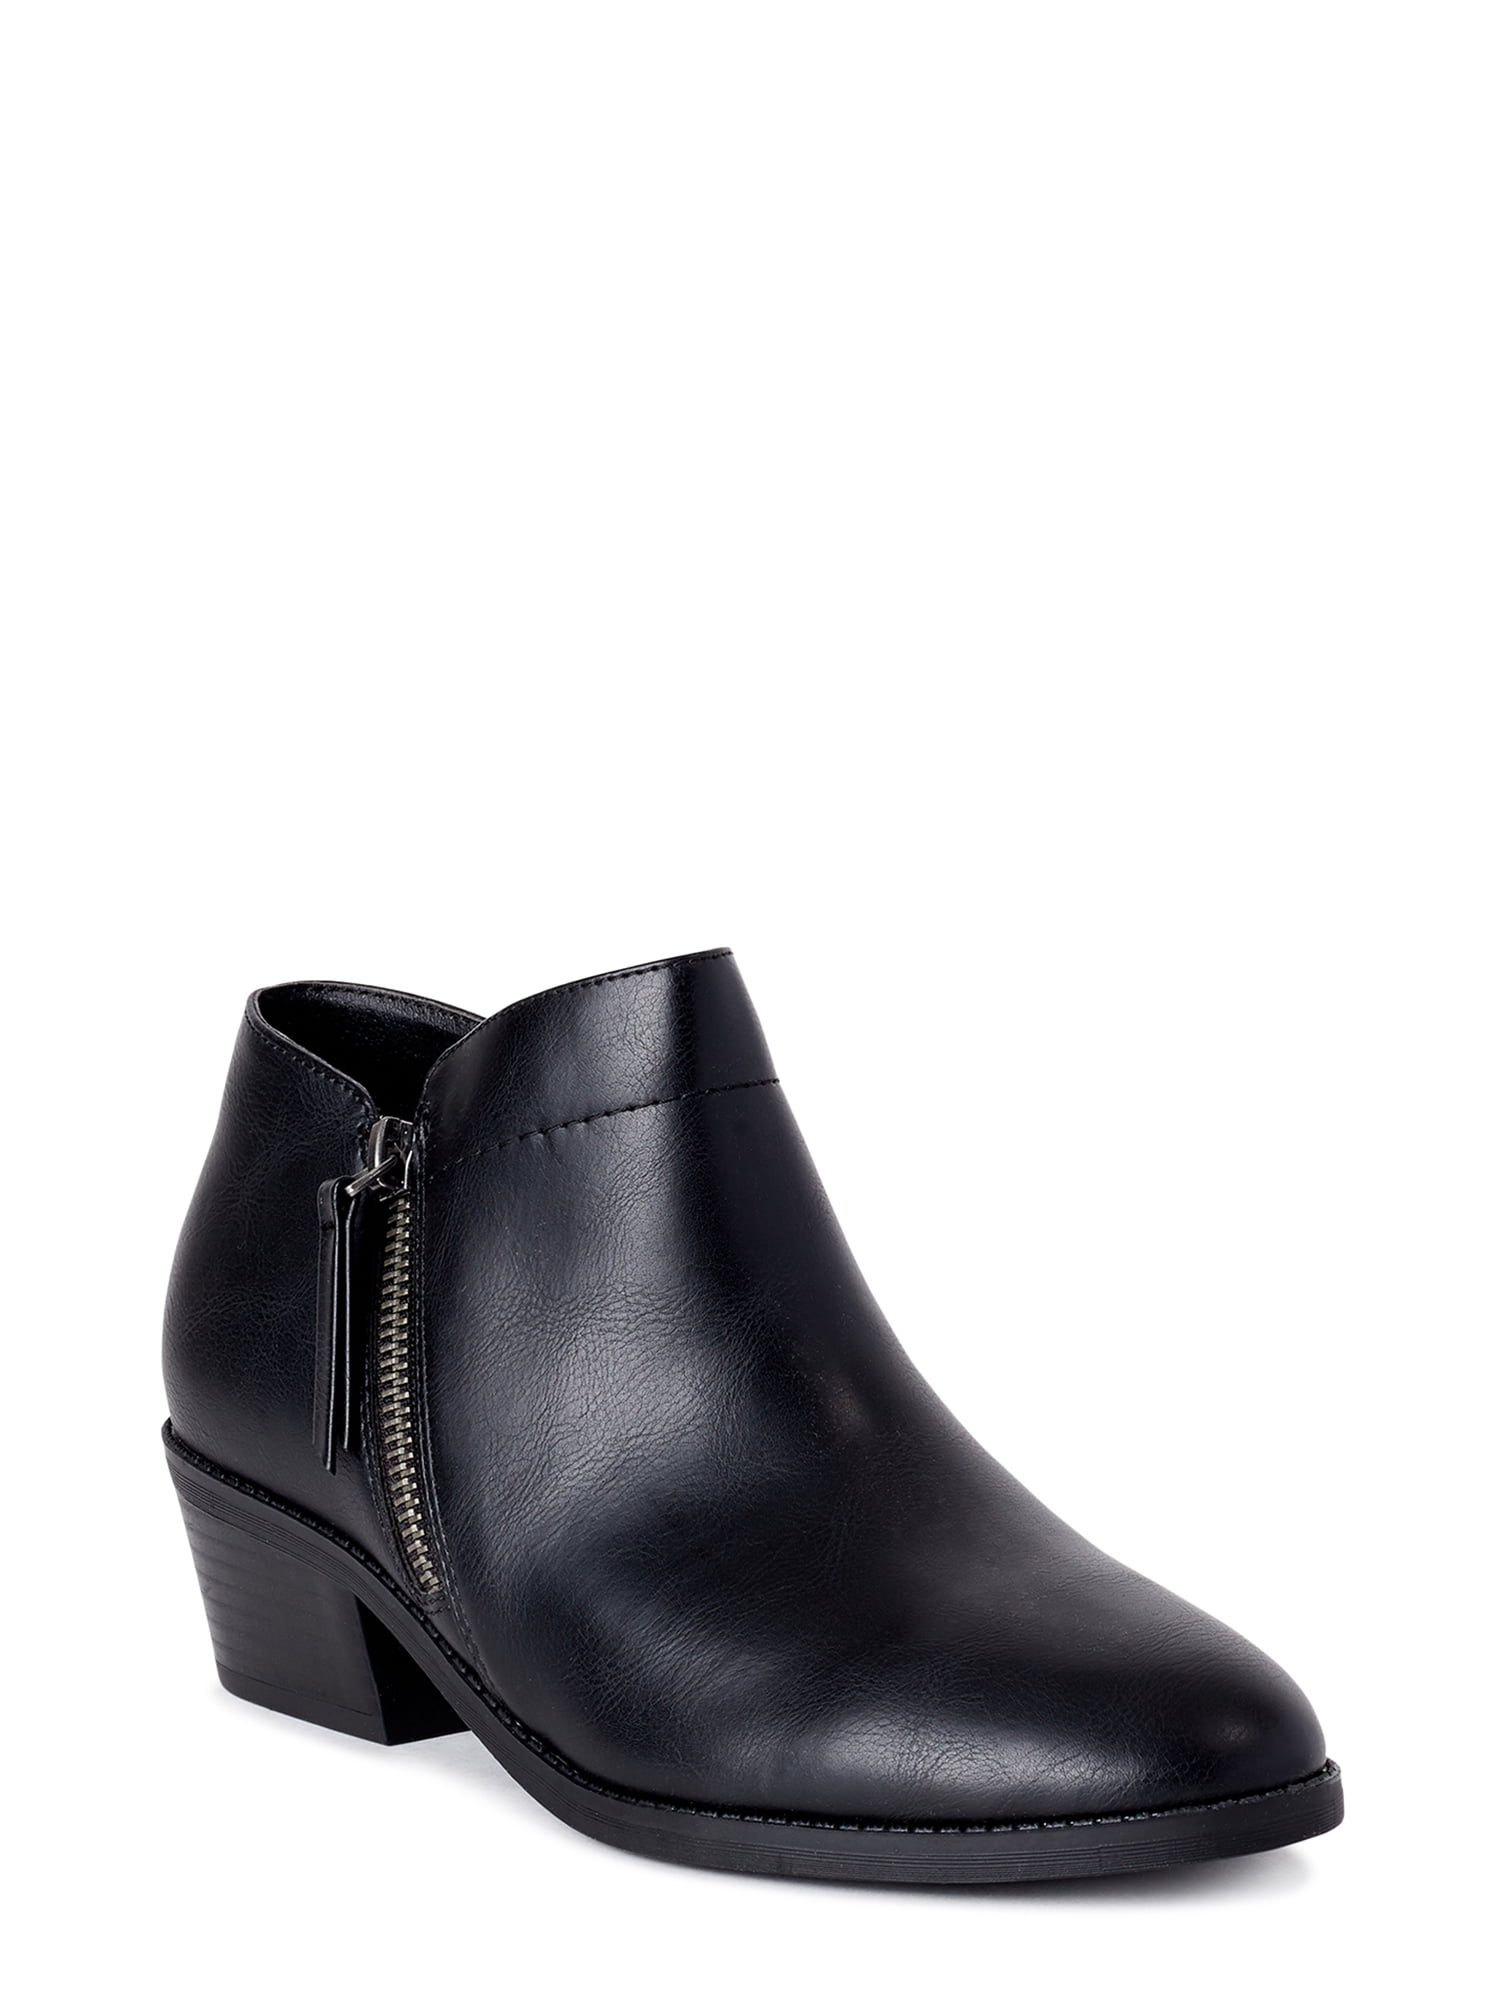 walmart womens boots wide width